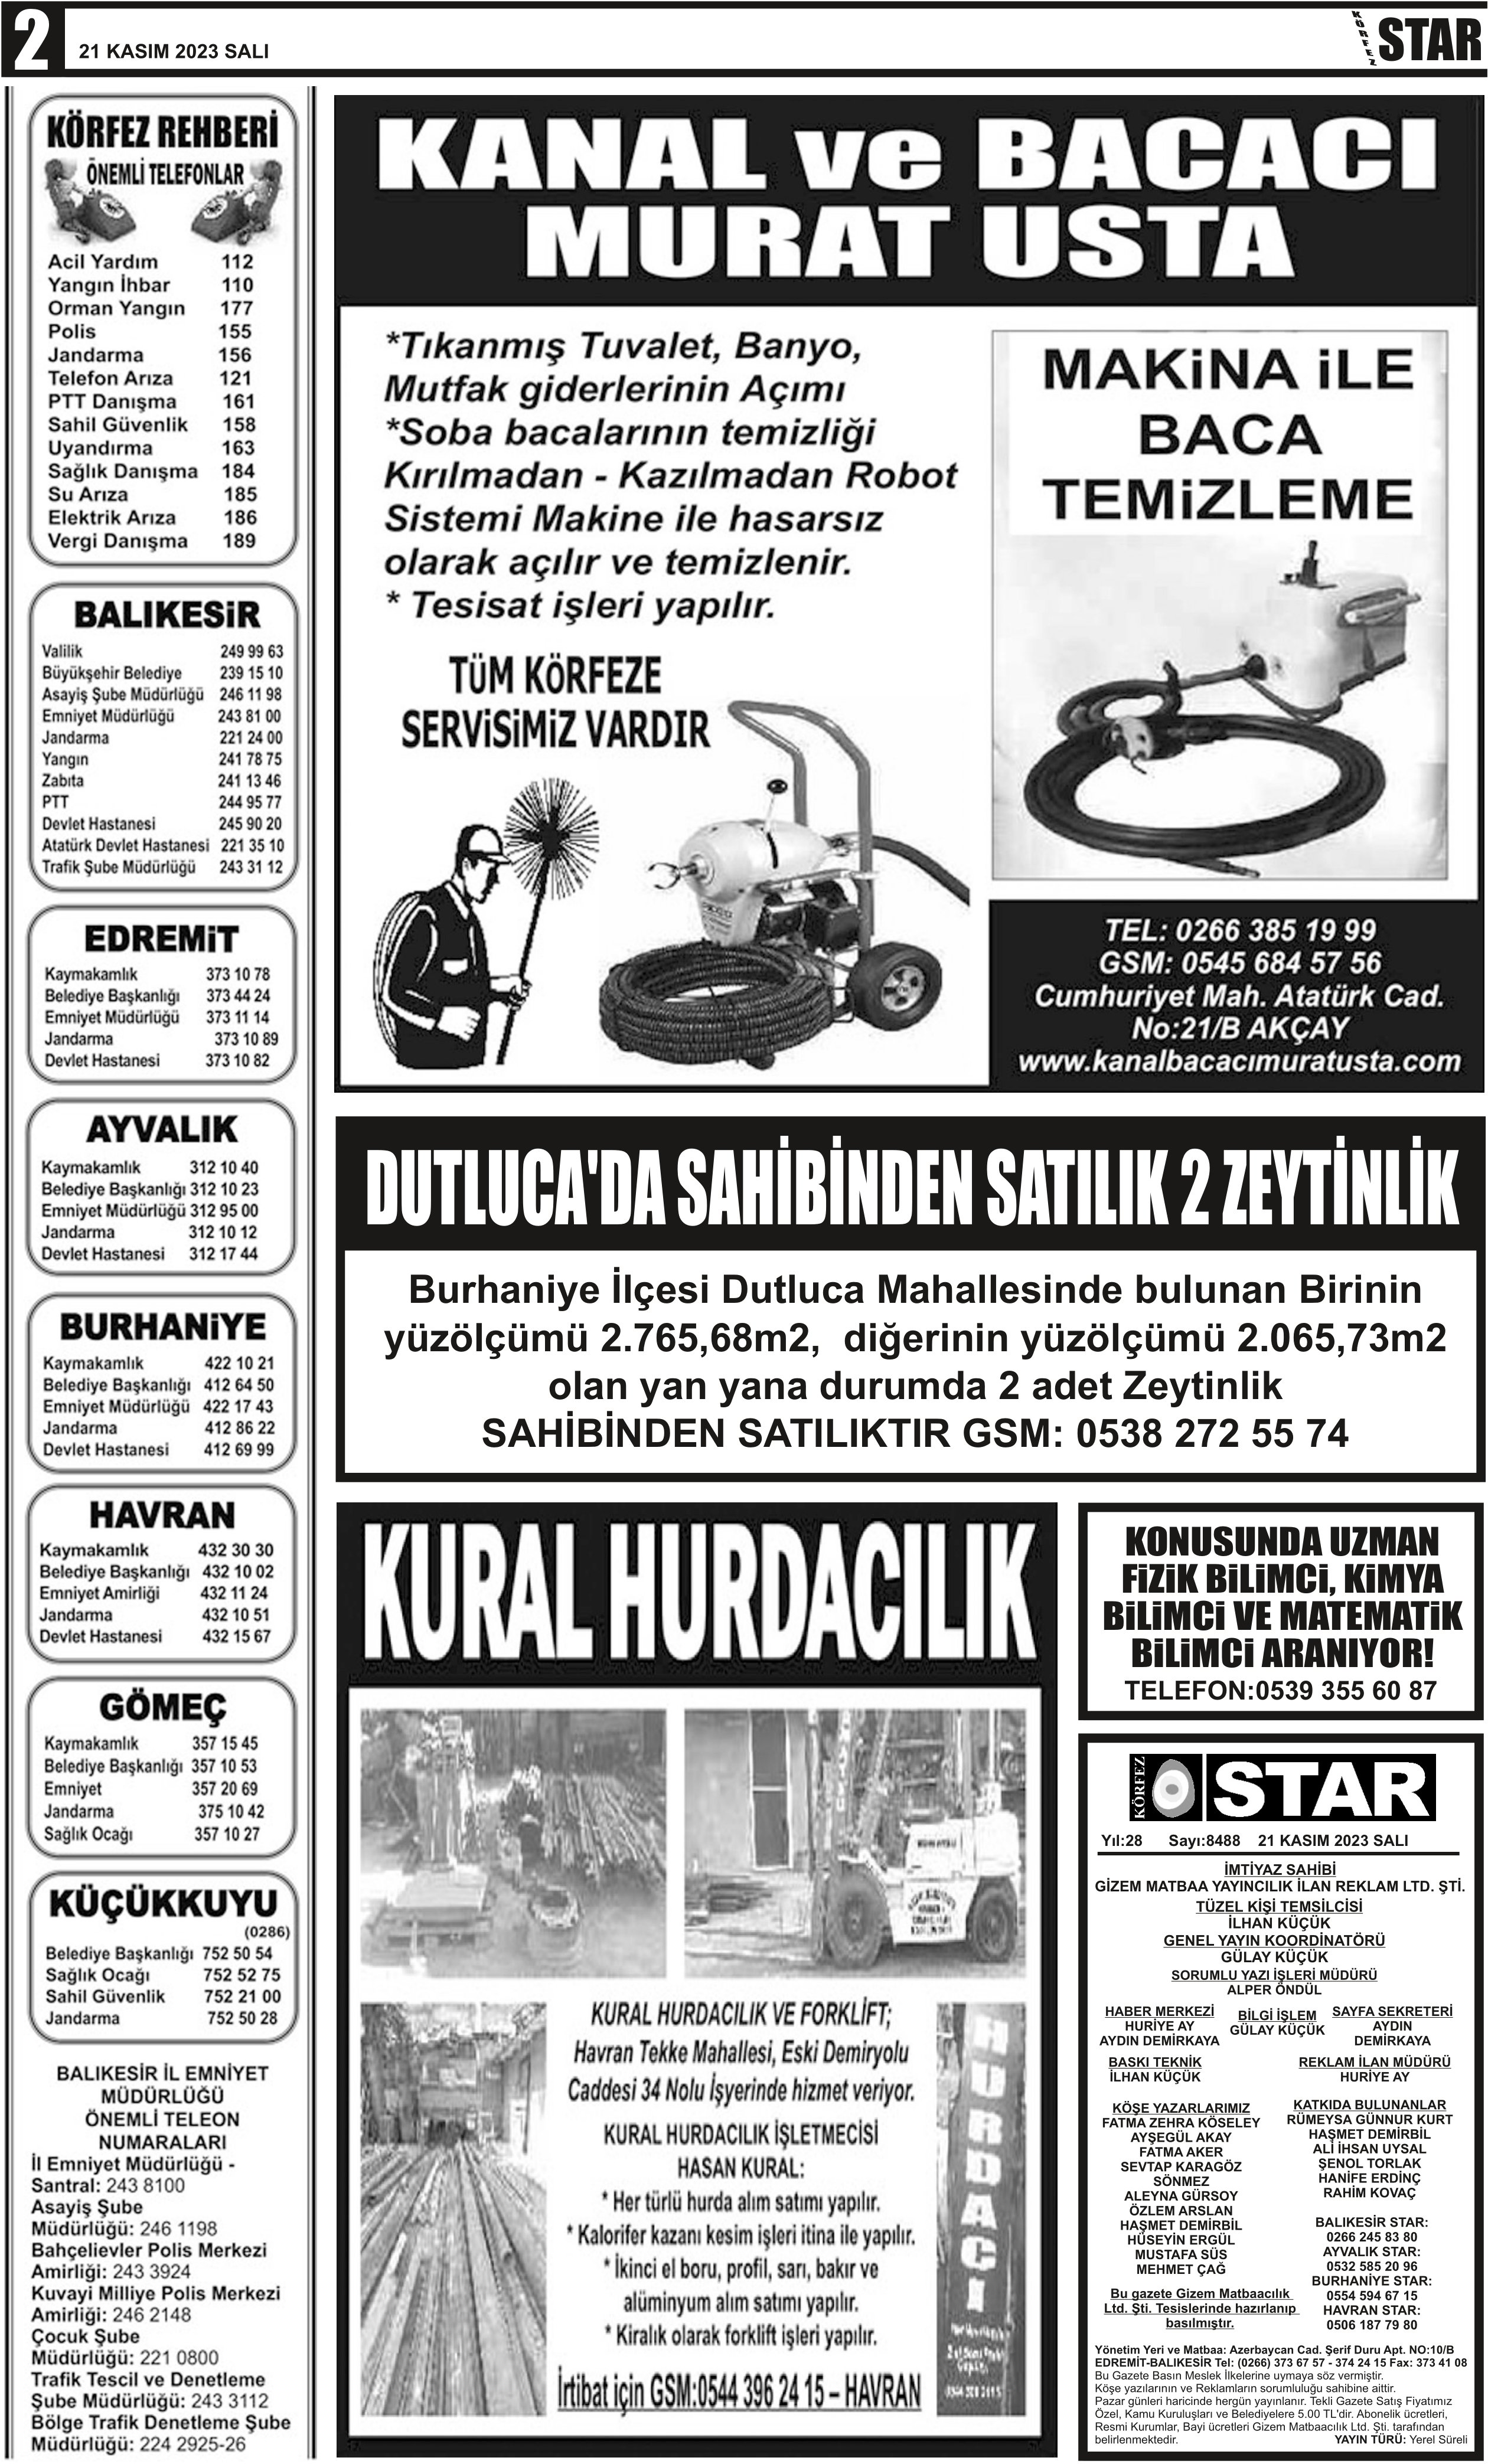 21112023-tarihli-gazetemiz-7123-11-20083727.jpg